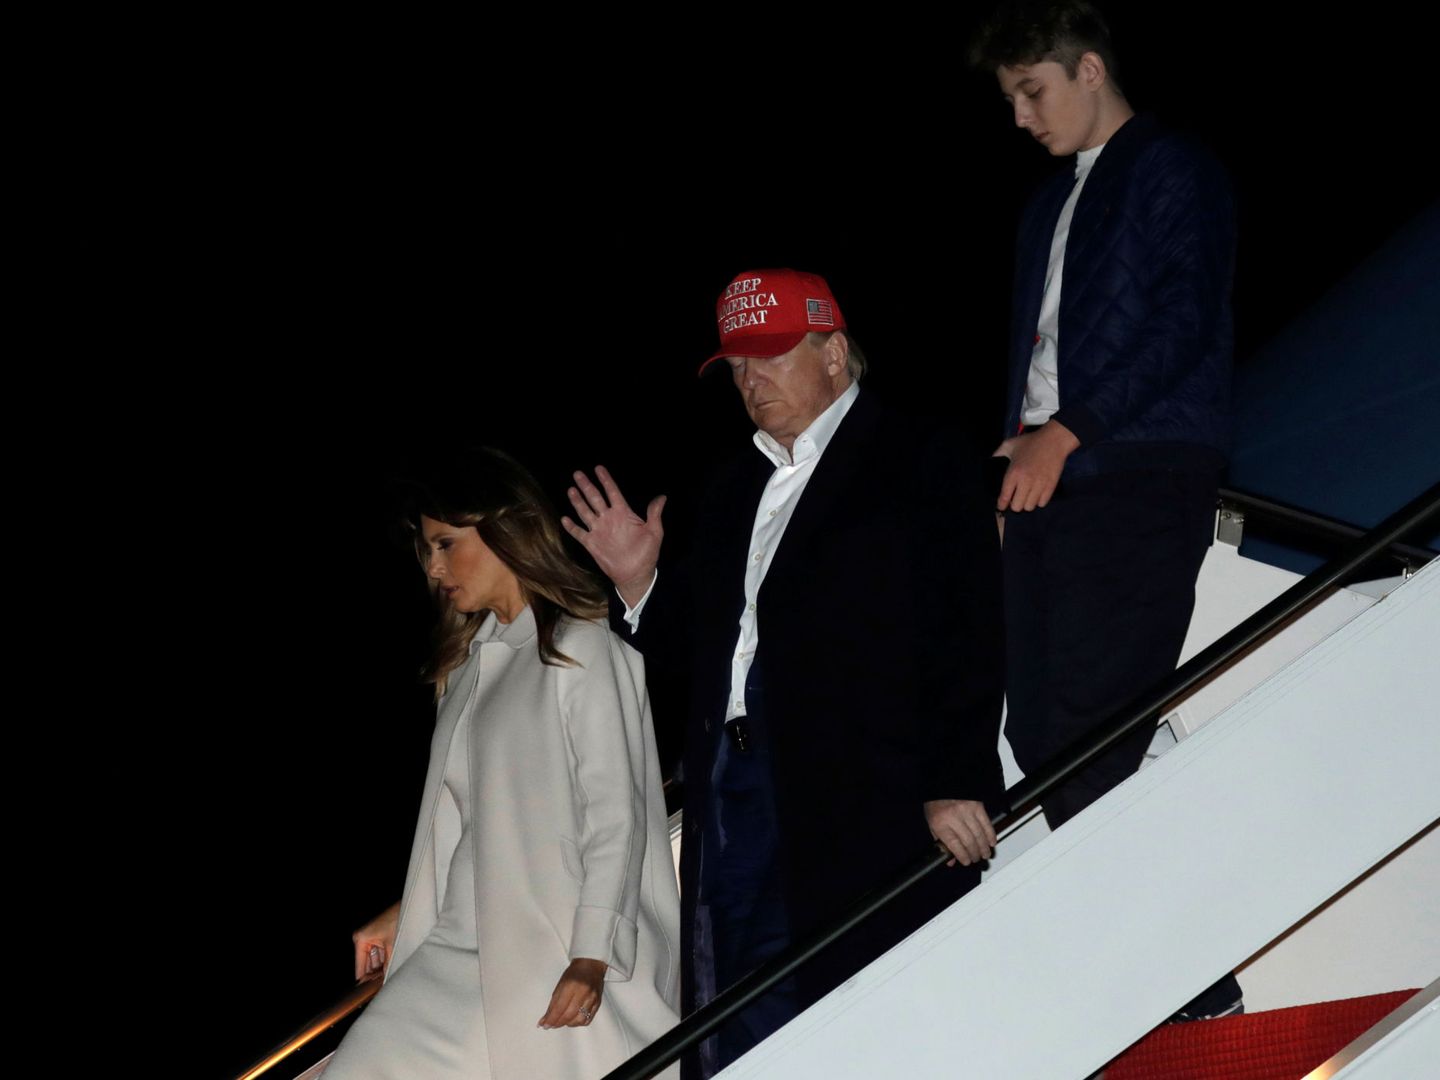 El matrimonio Trump, con su hijo Barron. (Reuters)